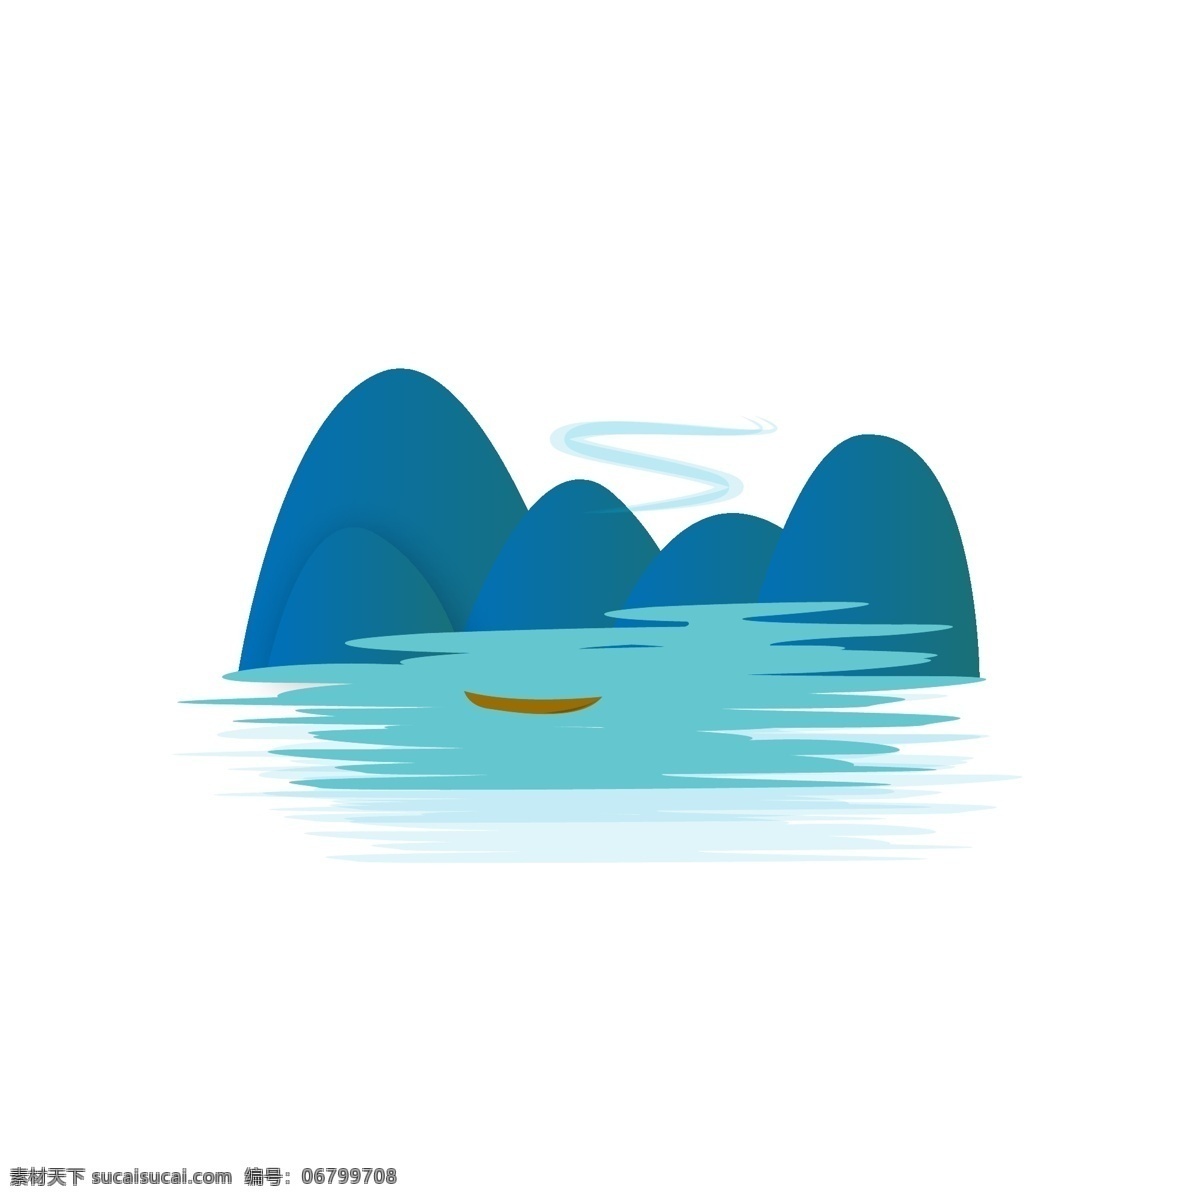 矢量山水图片 矢量山水 山水 中式山水 简约 矢量 湖 插画 动漫动画 风景漫画